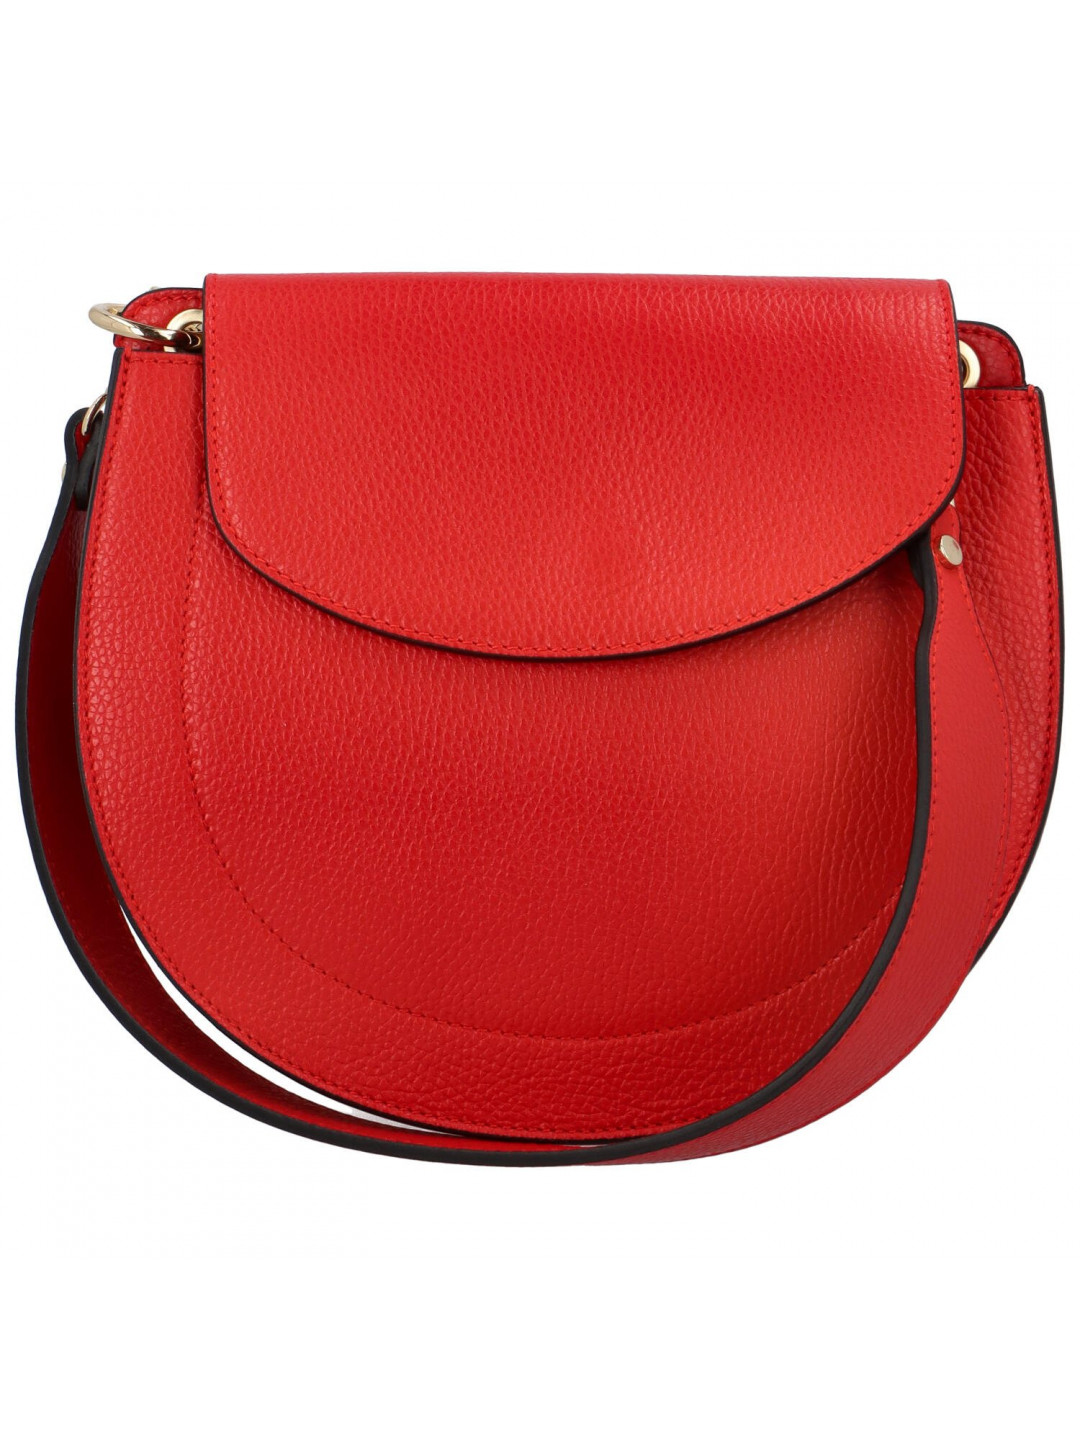 Luxusní dámská kožená kabelka April červená